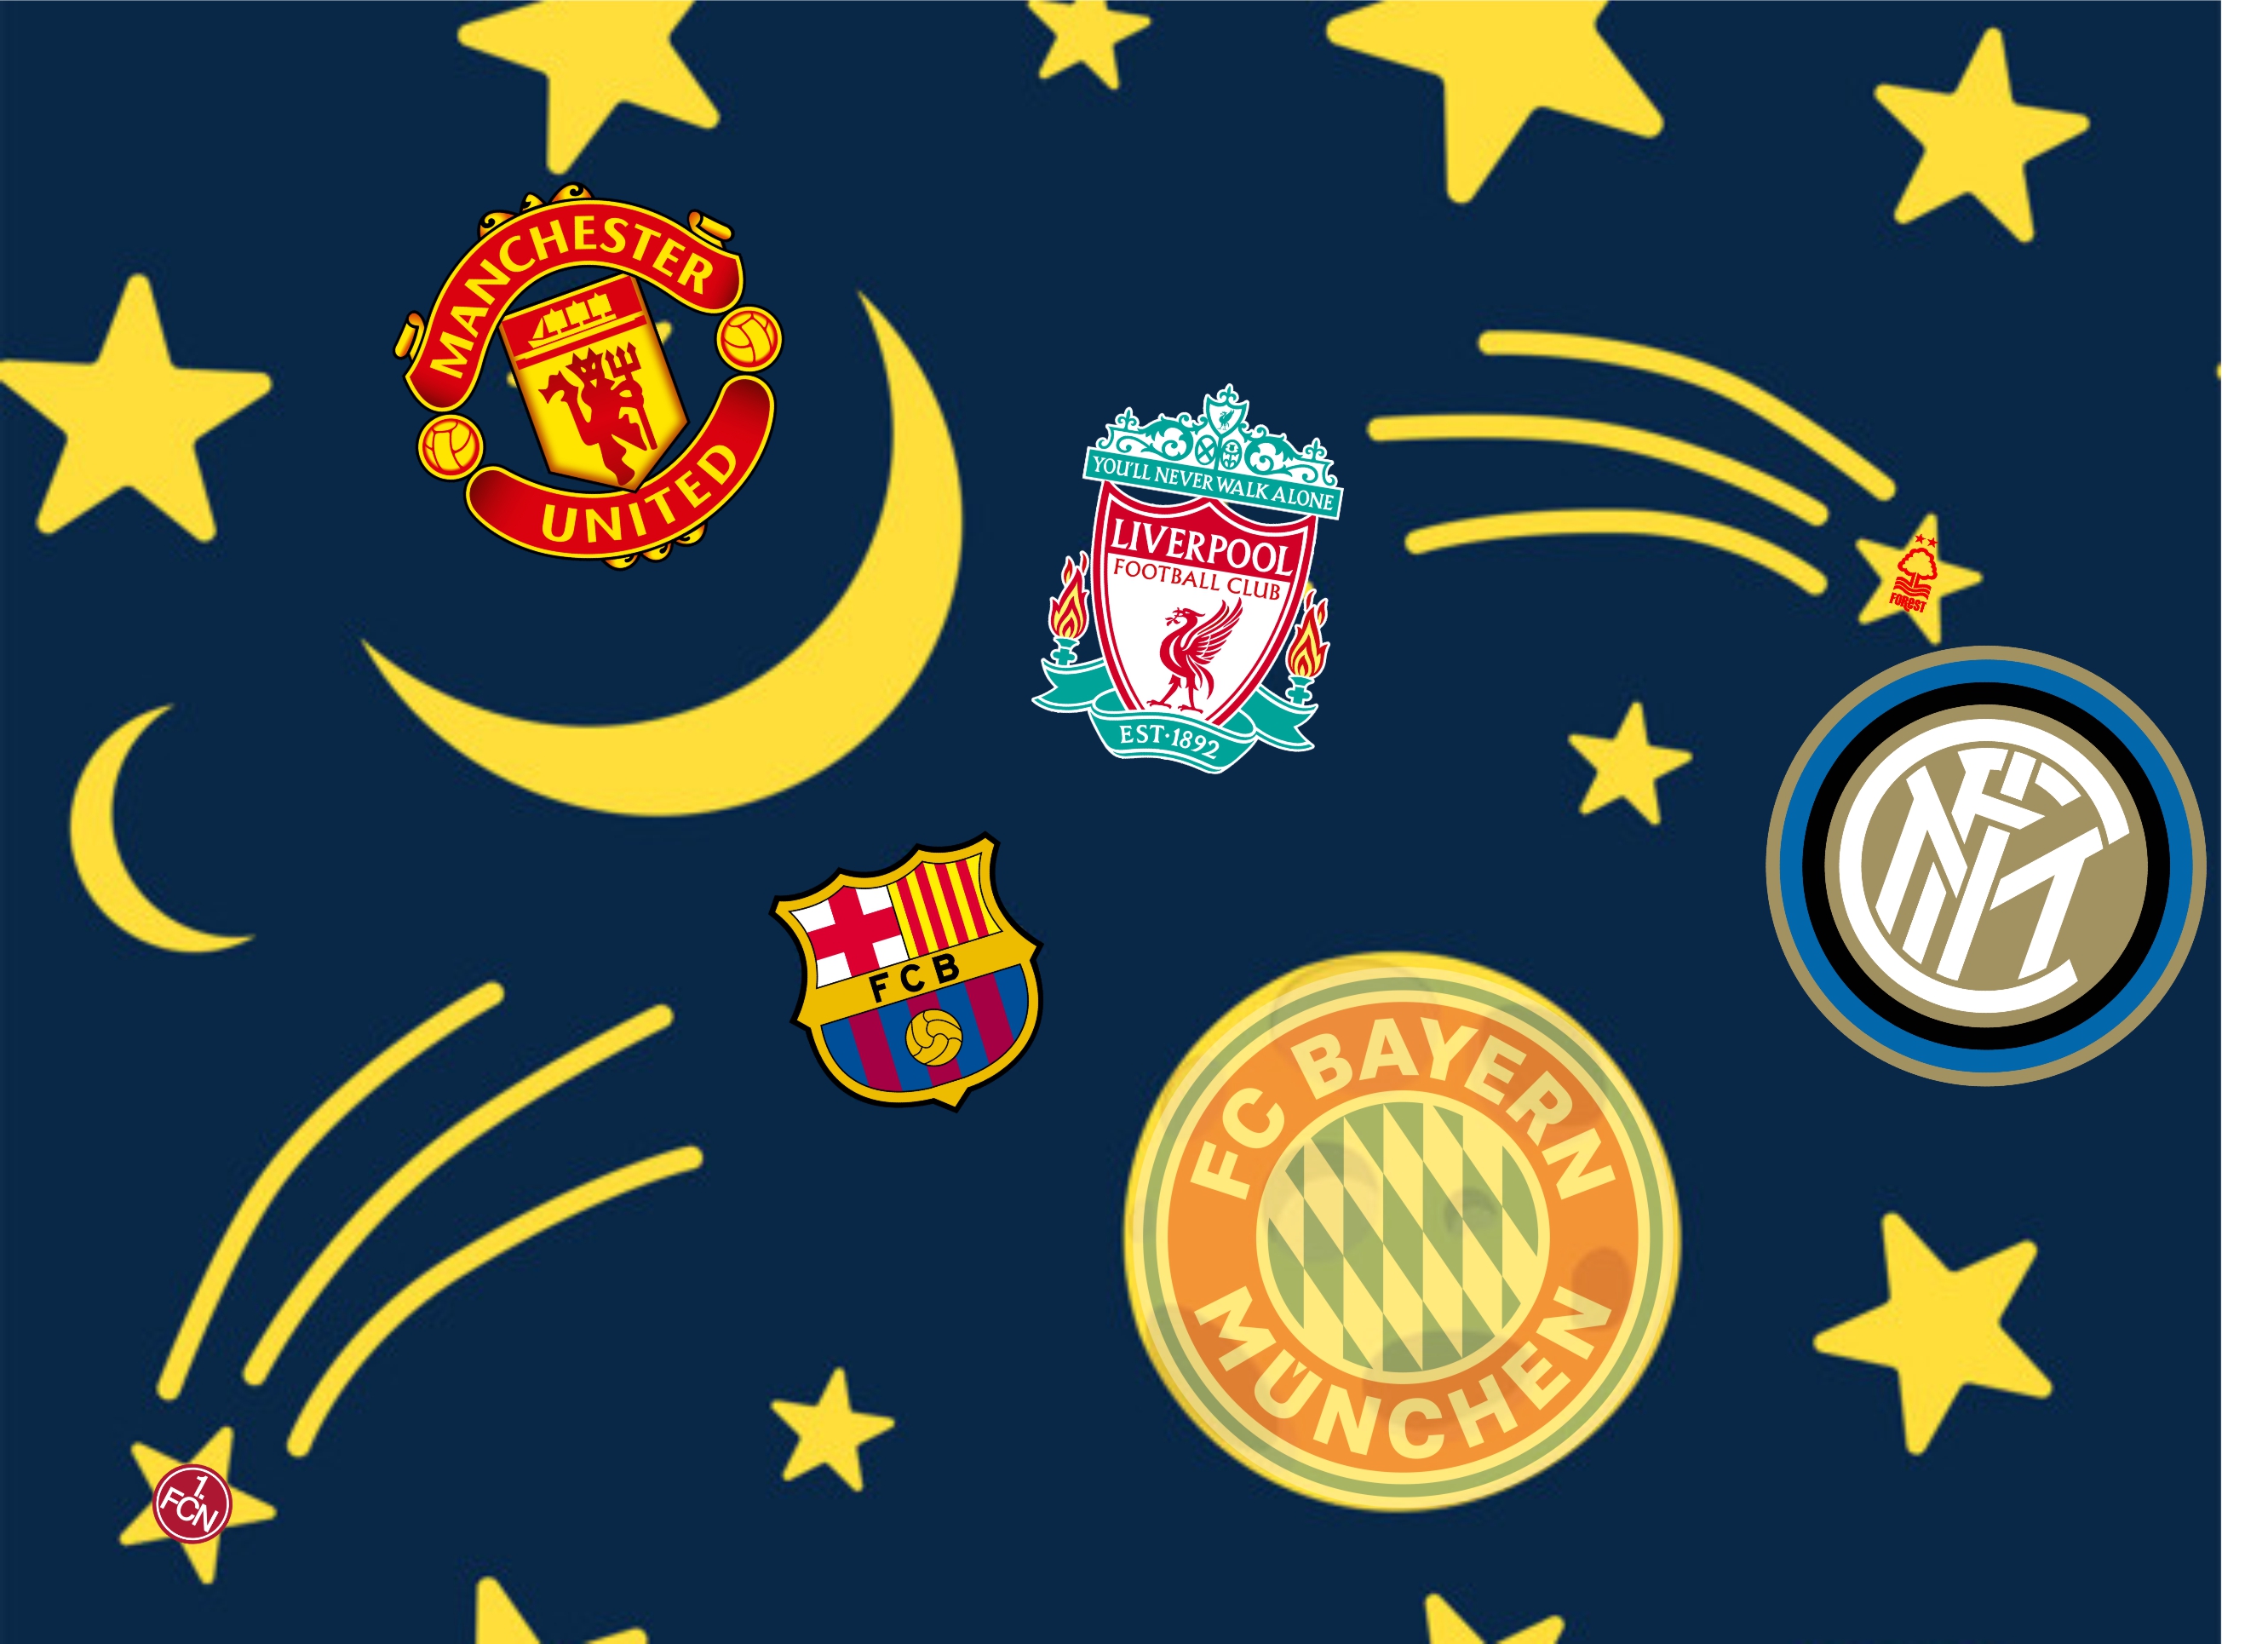 Падшие звёзды: краткая история клубов, некогда сверкавших на футбольном небосводе